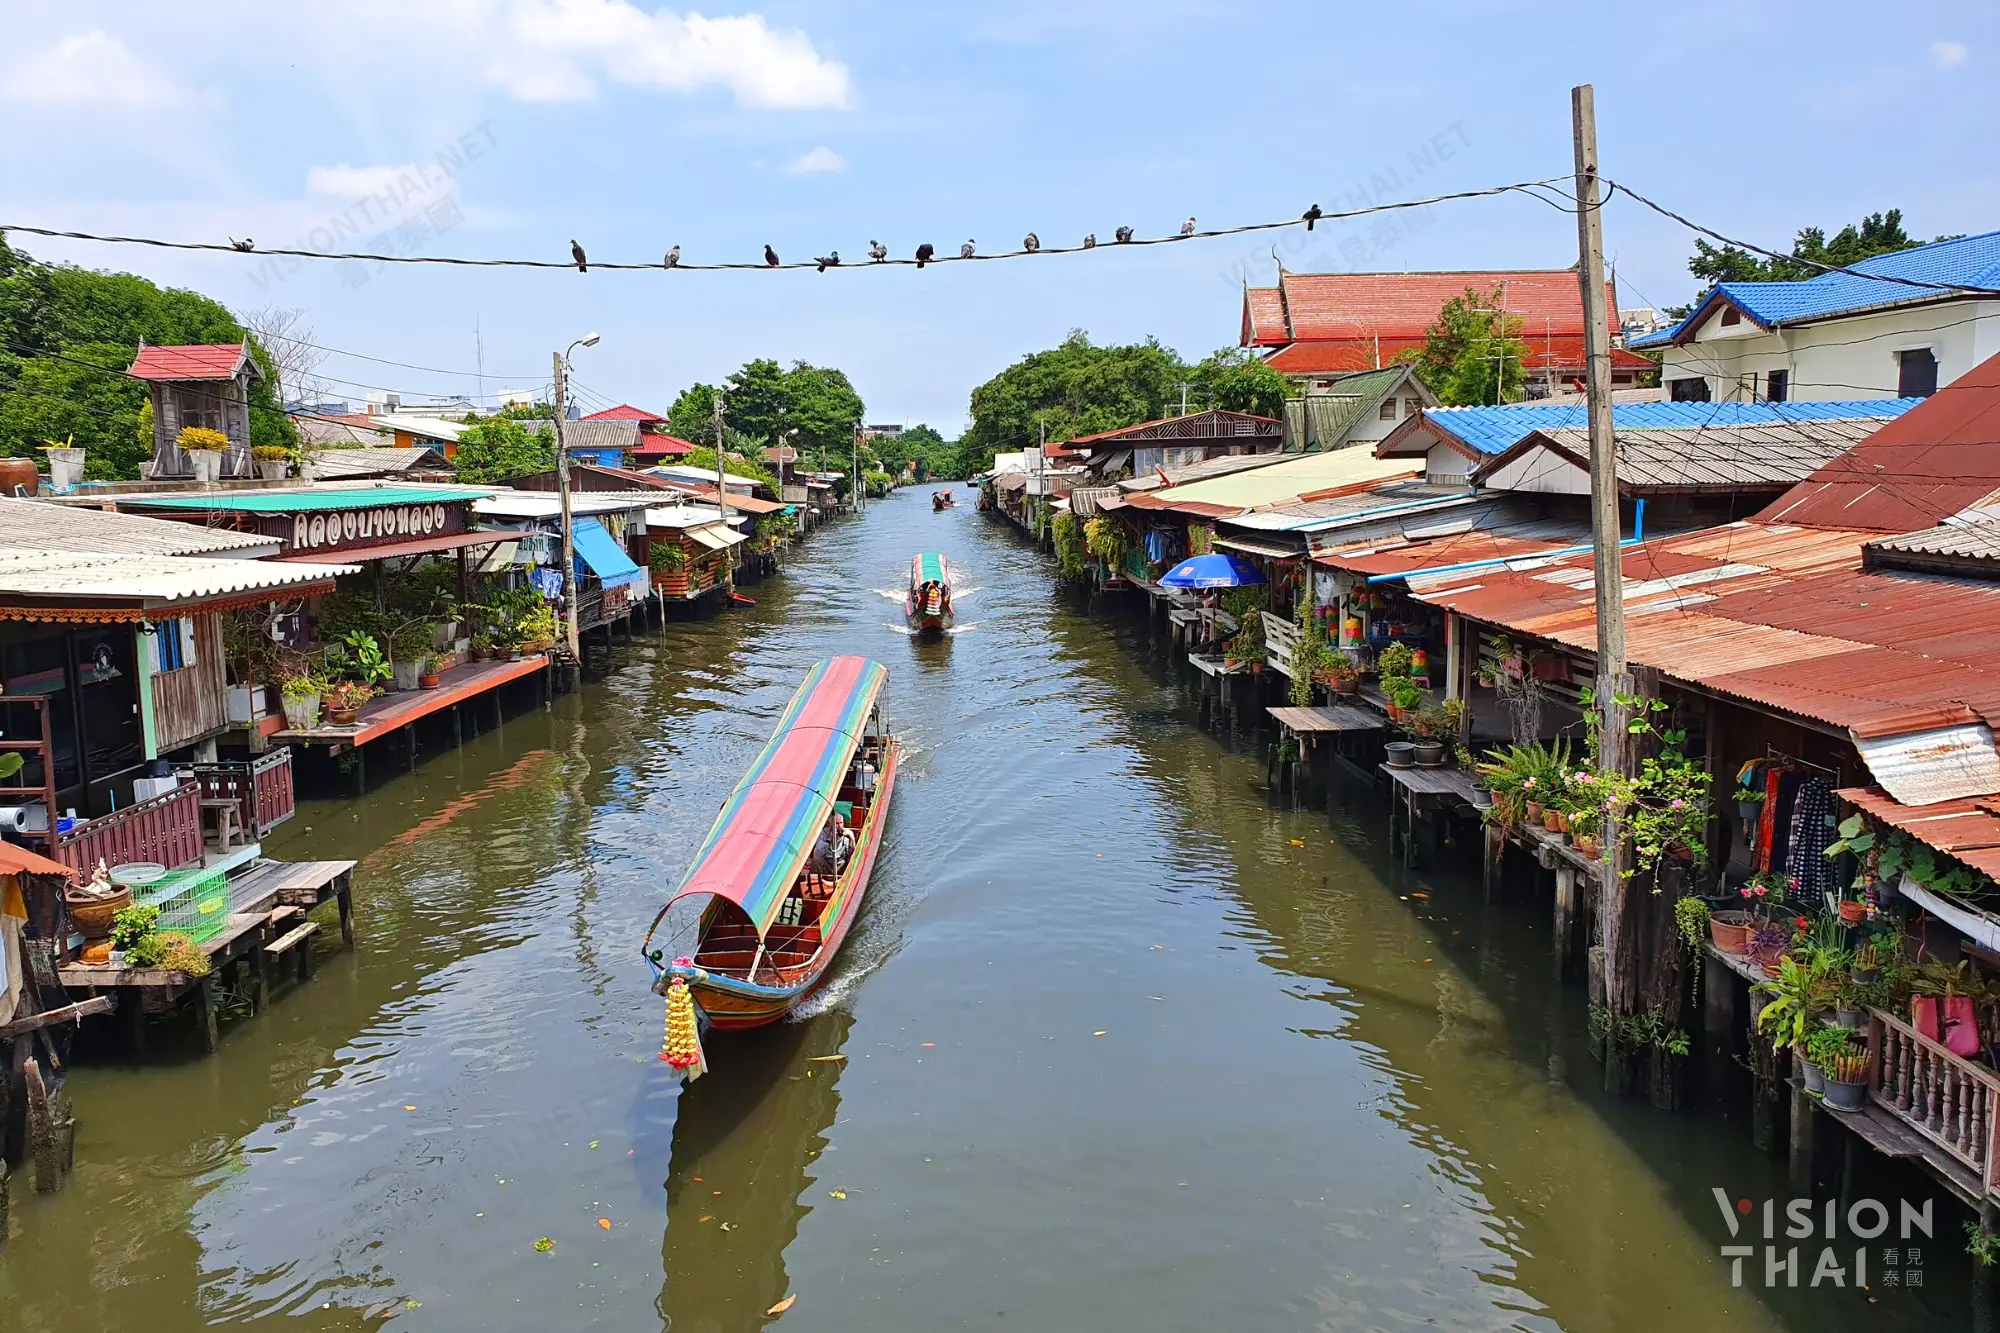 邦諾伊水上市場規模小充滿懷舊感，有許多藝術攤販（圖片來源：Vision Thai 看見泰國）